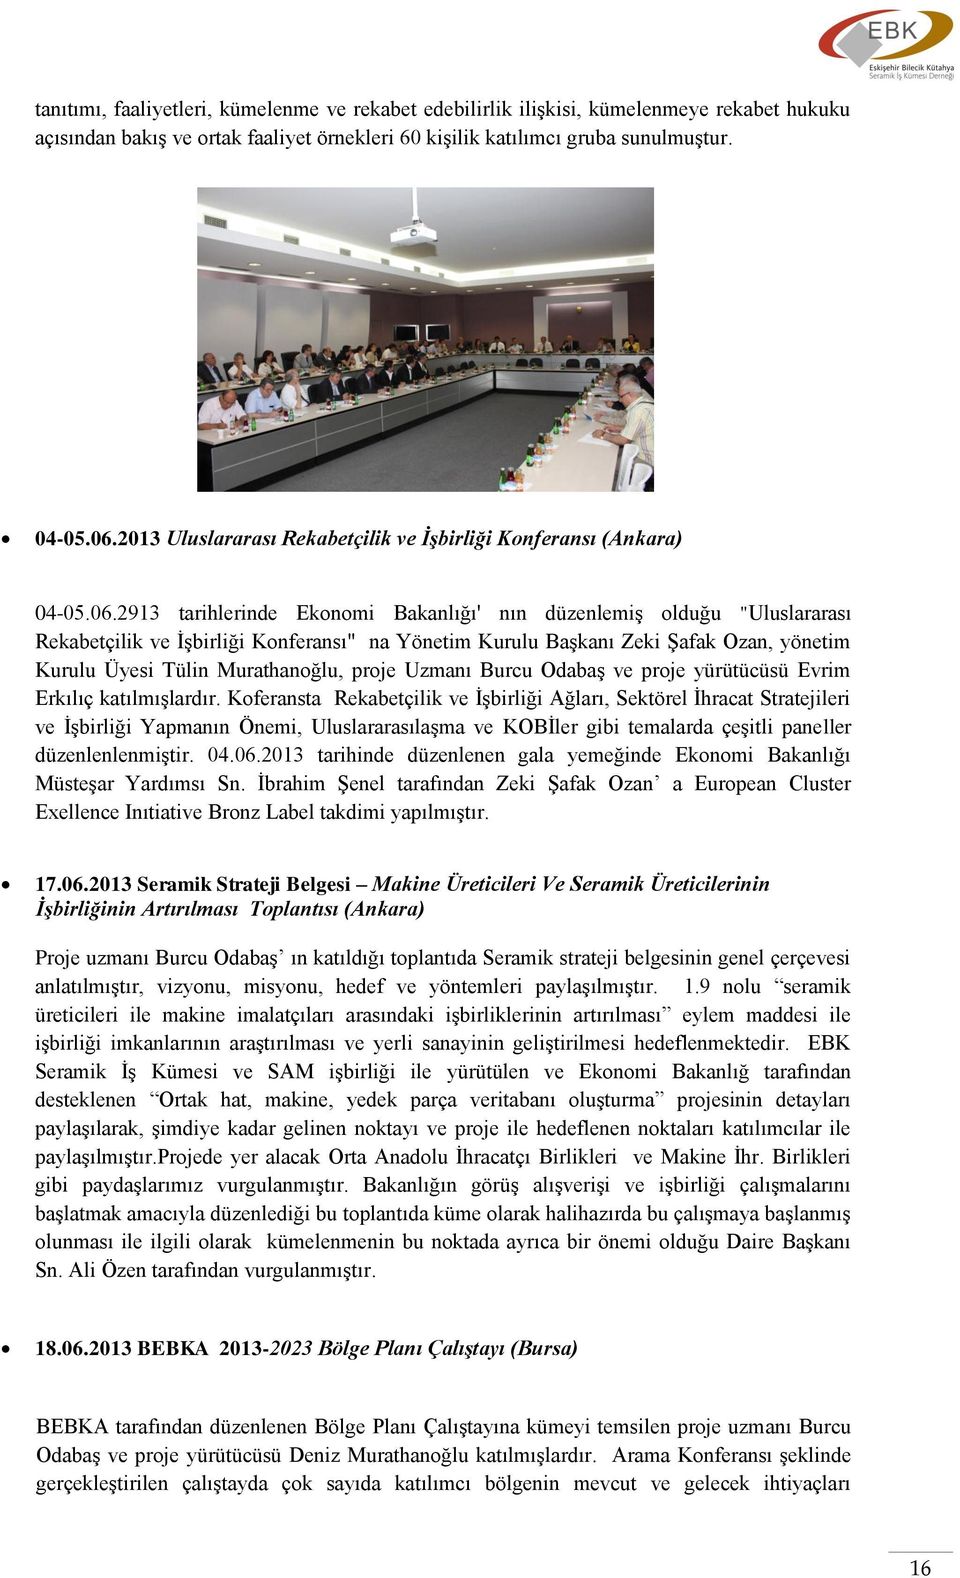 2913 tarihlerinde Ekonomi Bakanlığı' nın düzenlemiş olduğu "Uluslararası Rekabetçilik ve İşbirliği Konferansı" na Yönetim Kurulu Başkanı Zeki Şafak Ozan, yönetim Kurulu Üyesi Tülin Murathanoğlu,